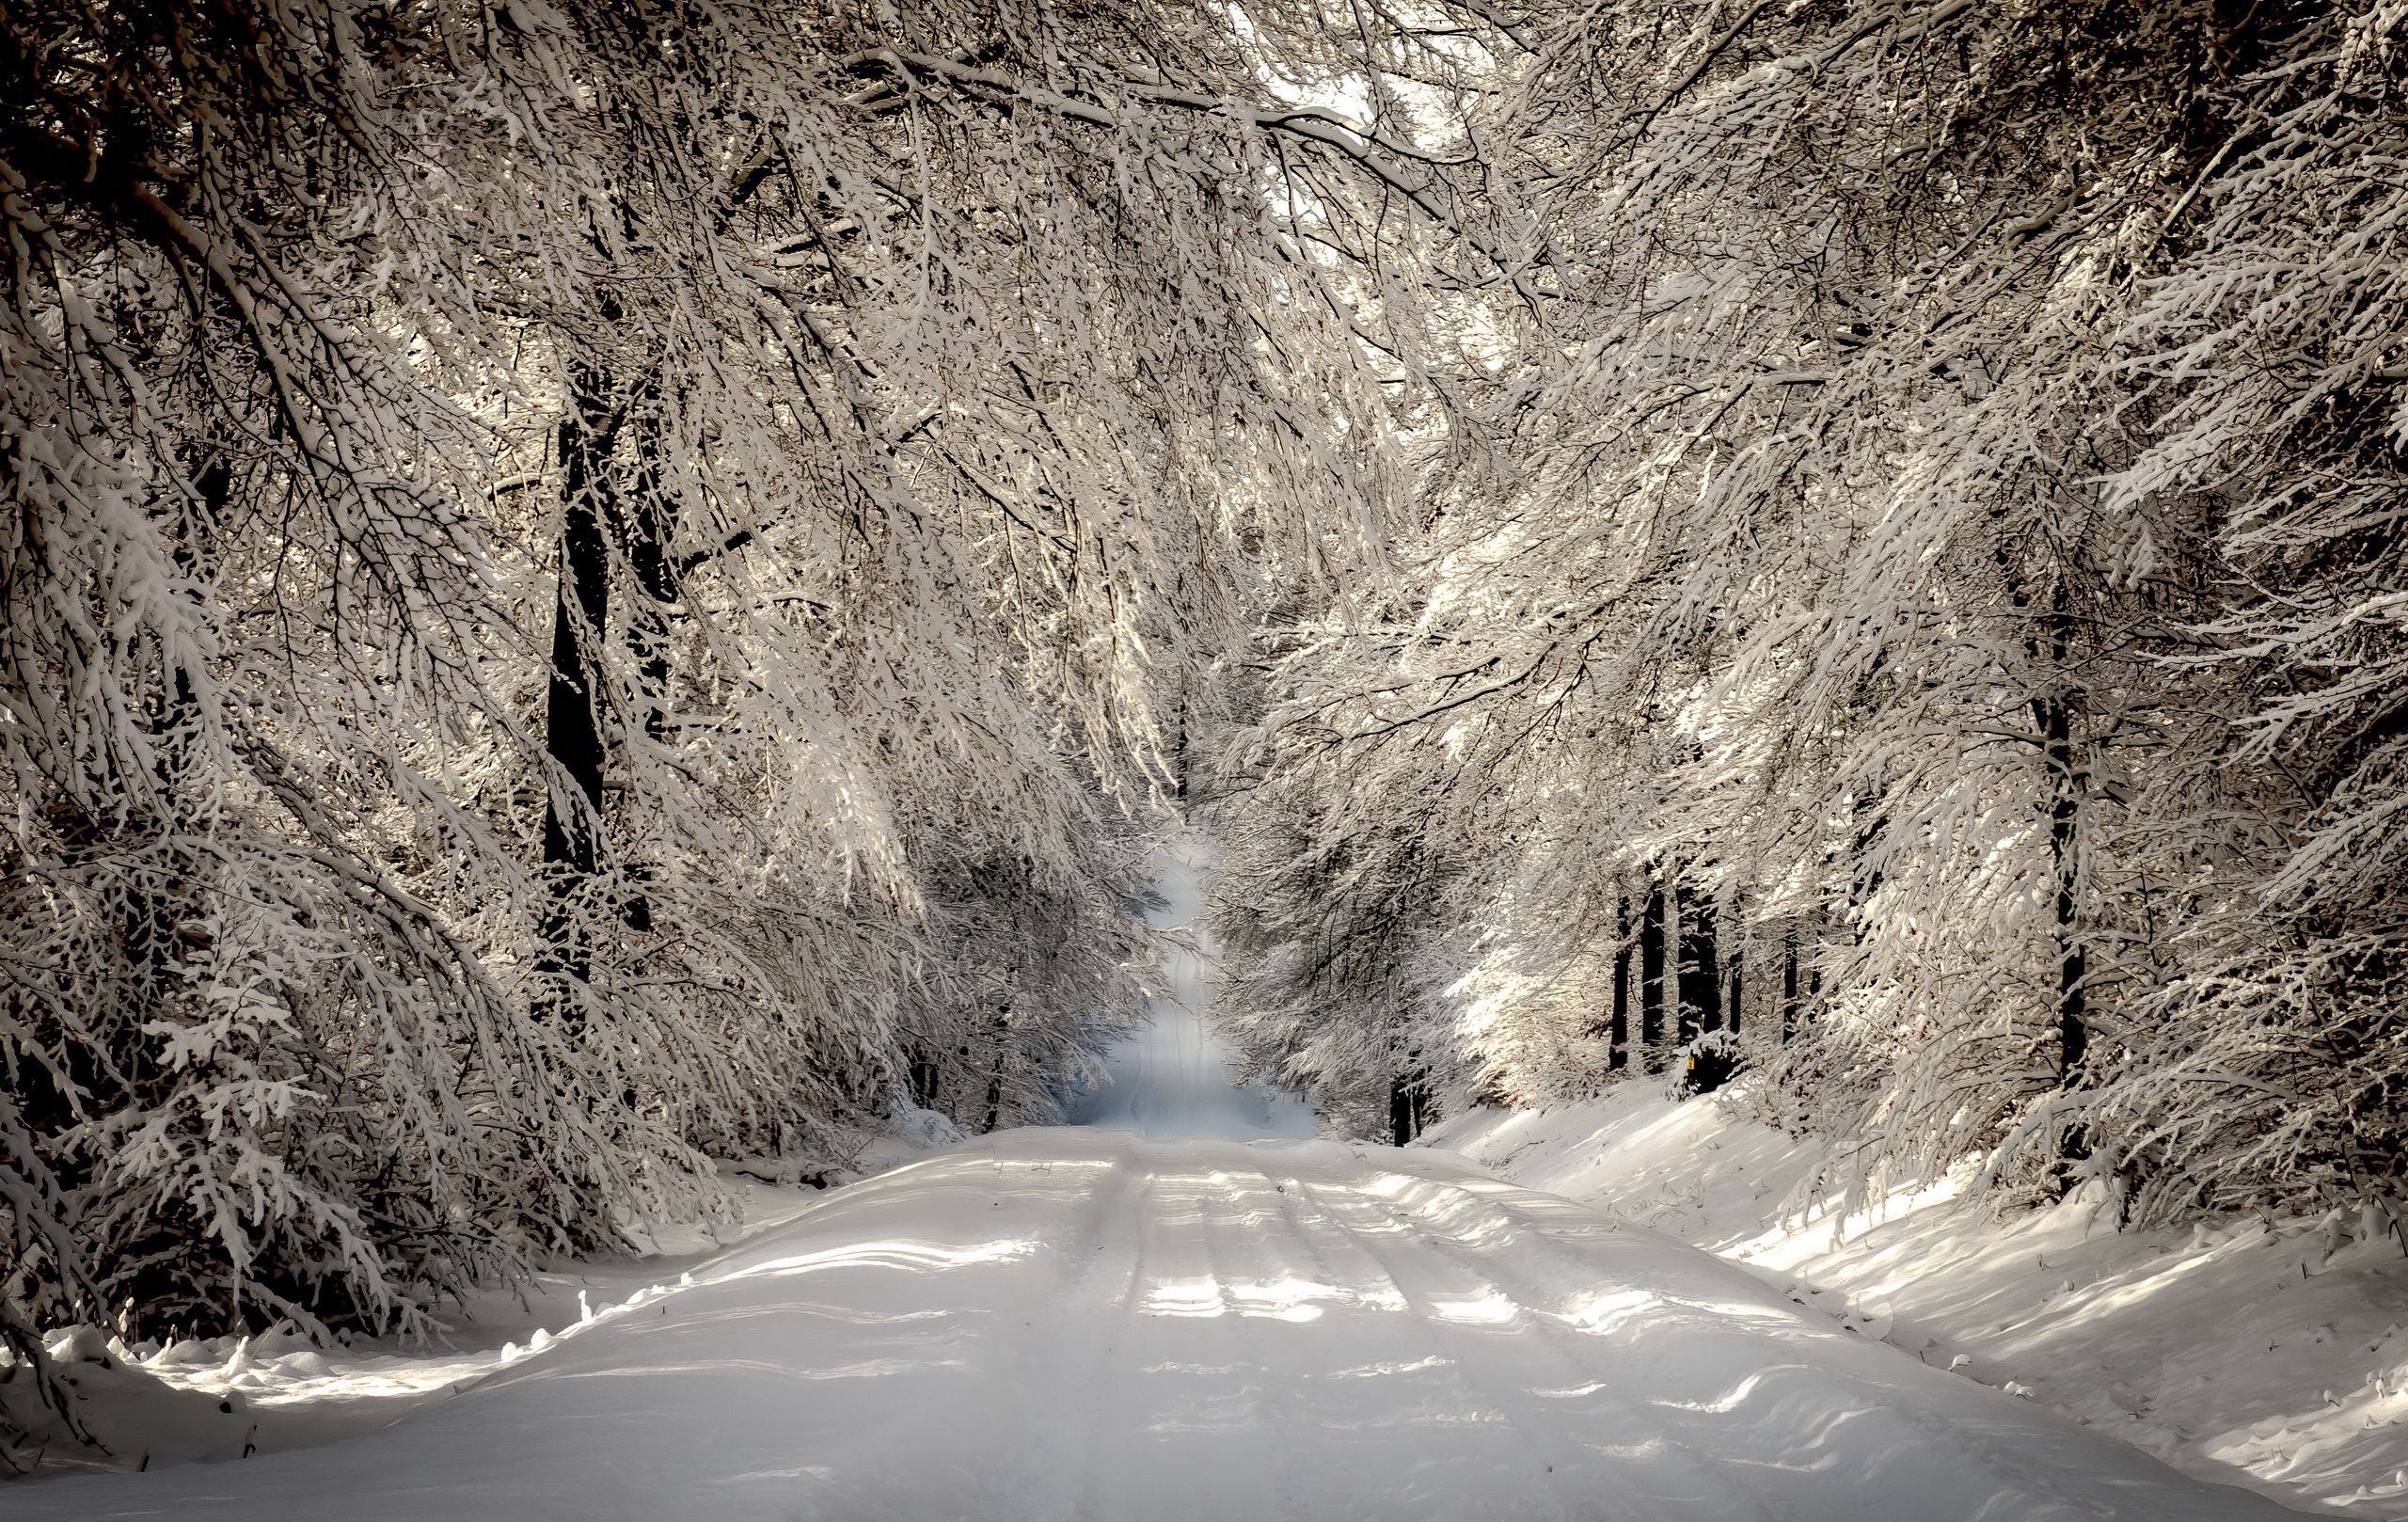 Скачать обои бесплатно Зима, Природа, Снег, Дорога, Лес, Дерево, Белый, Земля/природа картинка на рабочий стол ПК